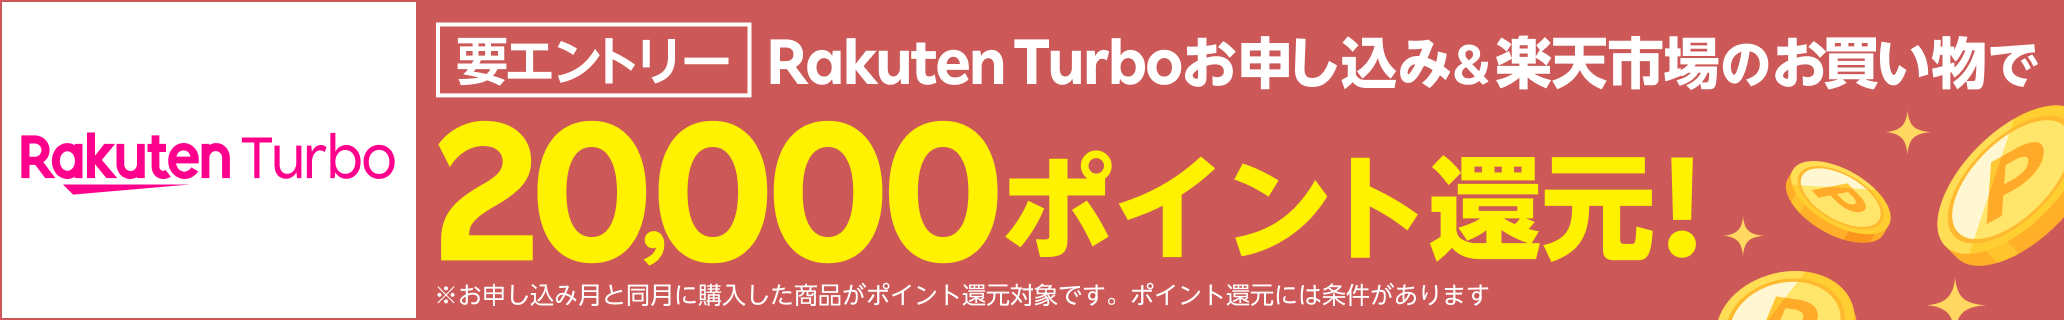 Rakuten Turboお申し込み&楽天市場のお買い物で20,000ポイント還元！※条件あり